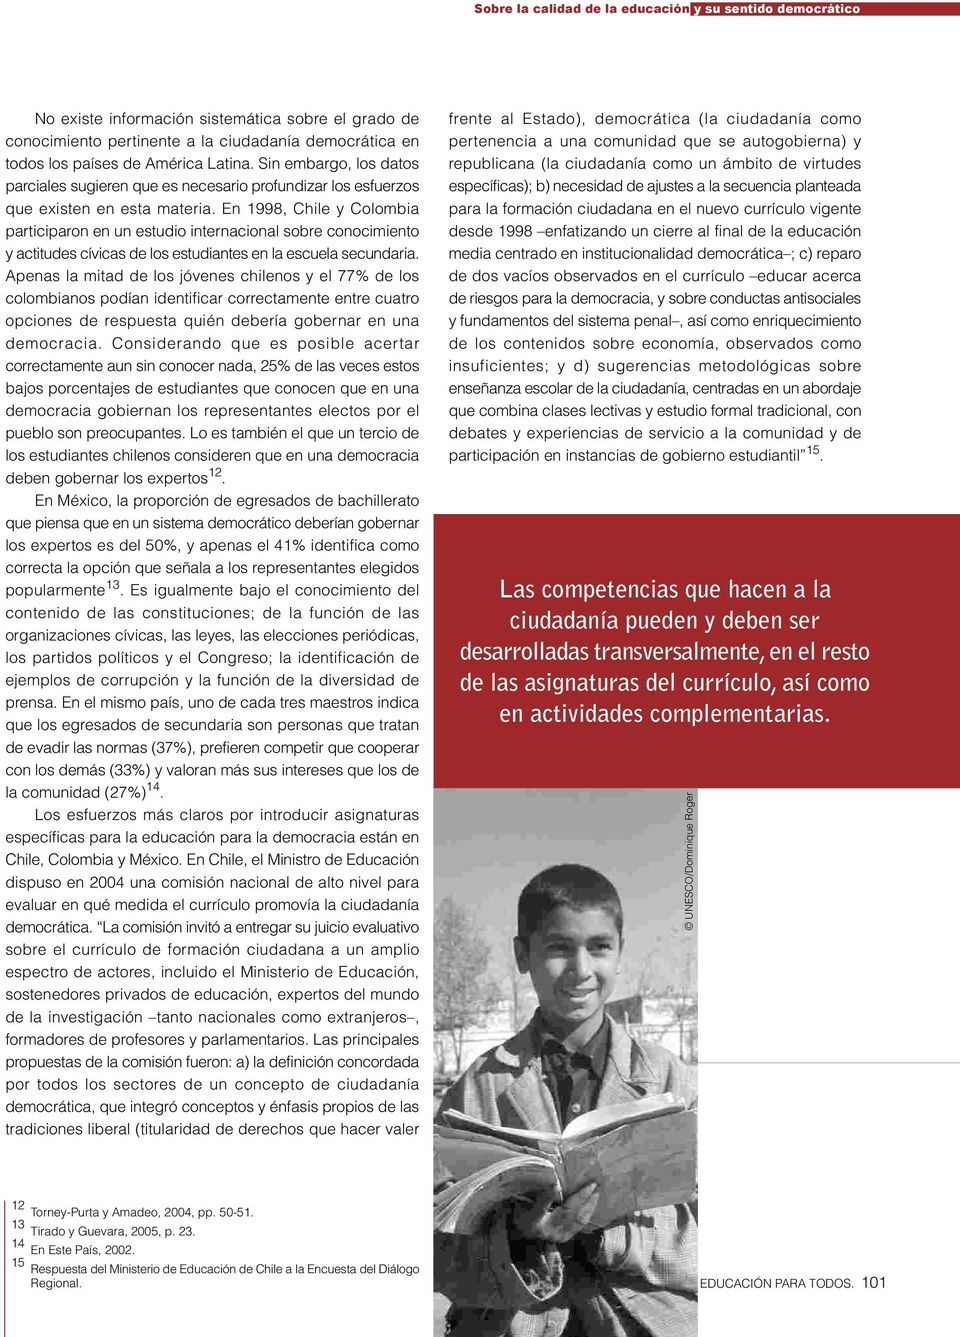 En 1998, Chile y Colombia participaron en un estudio internacional sobre conocimiento y actitudes cívicas de los estudiantes en la escuela secundaria.